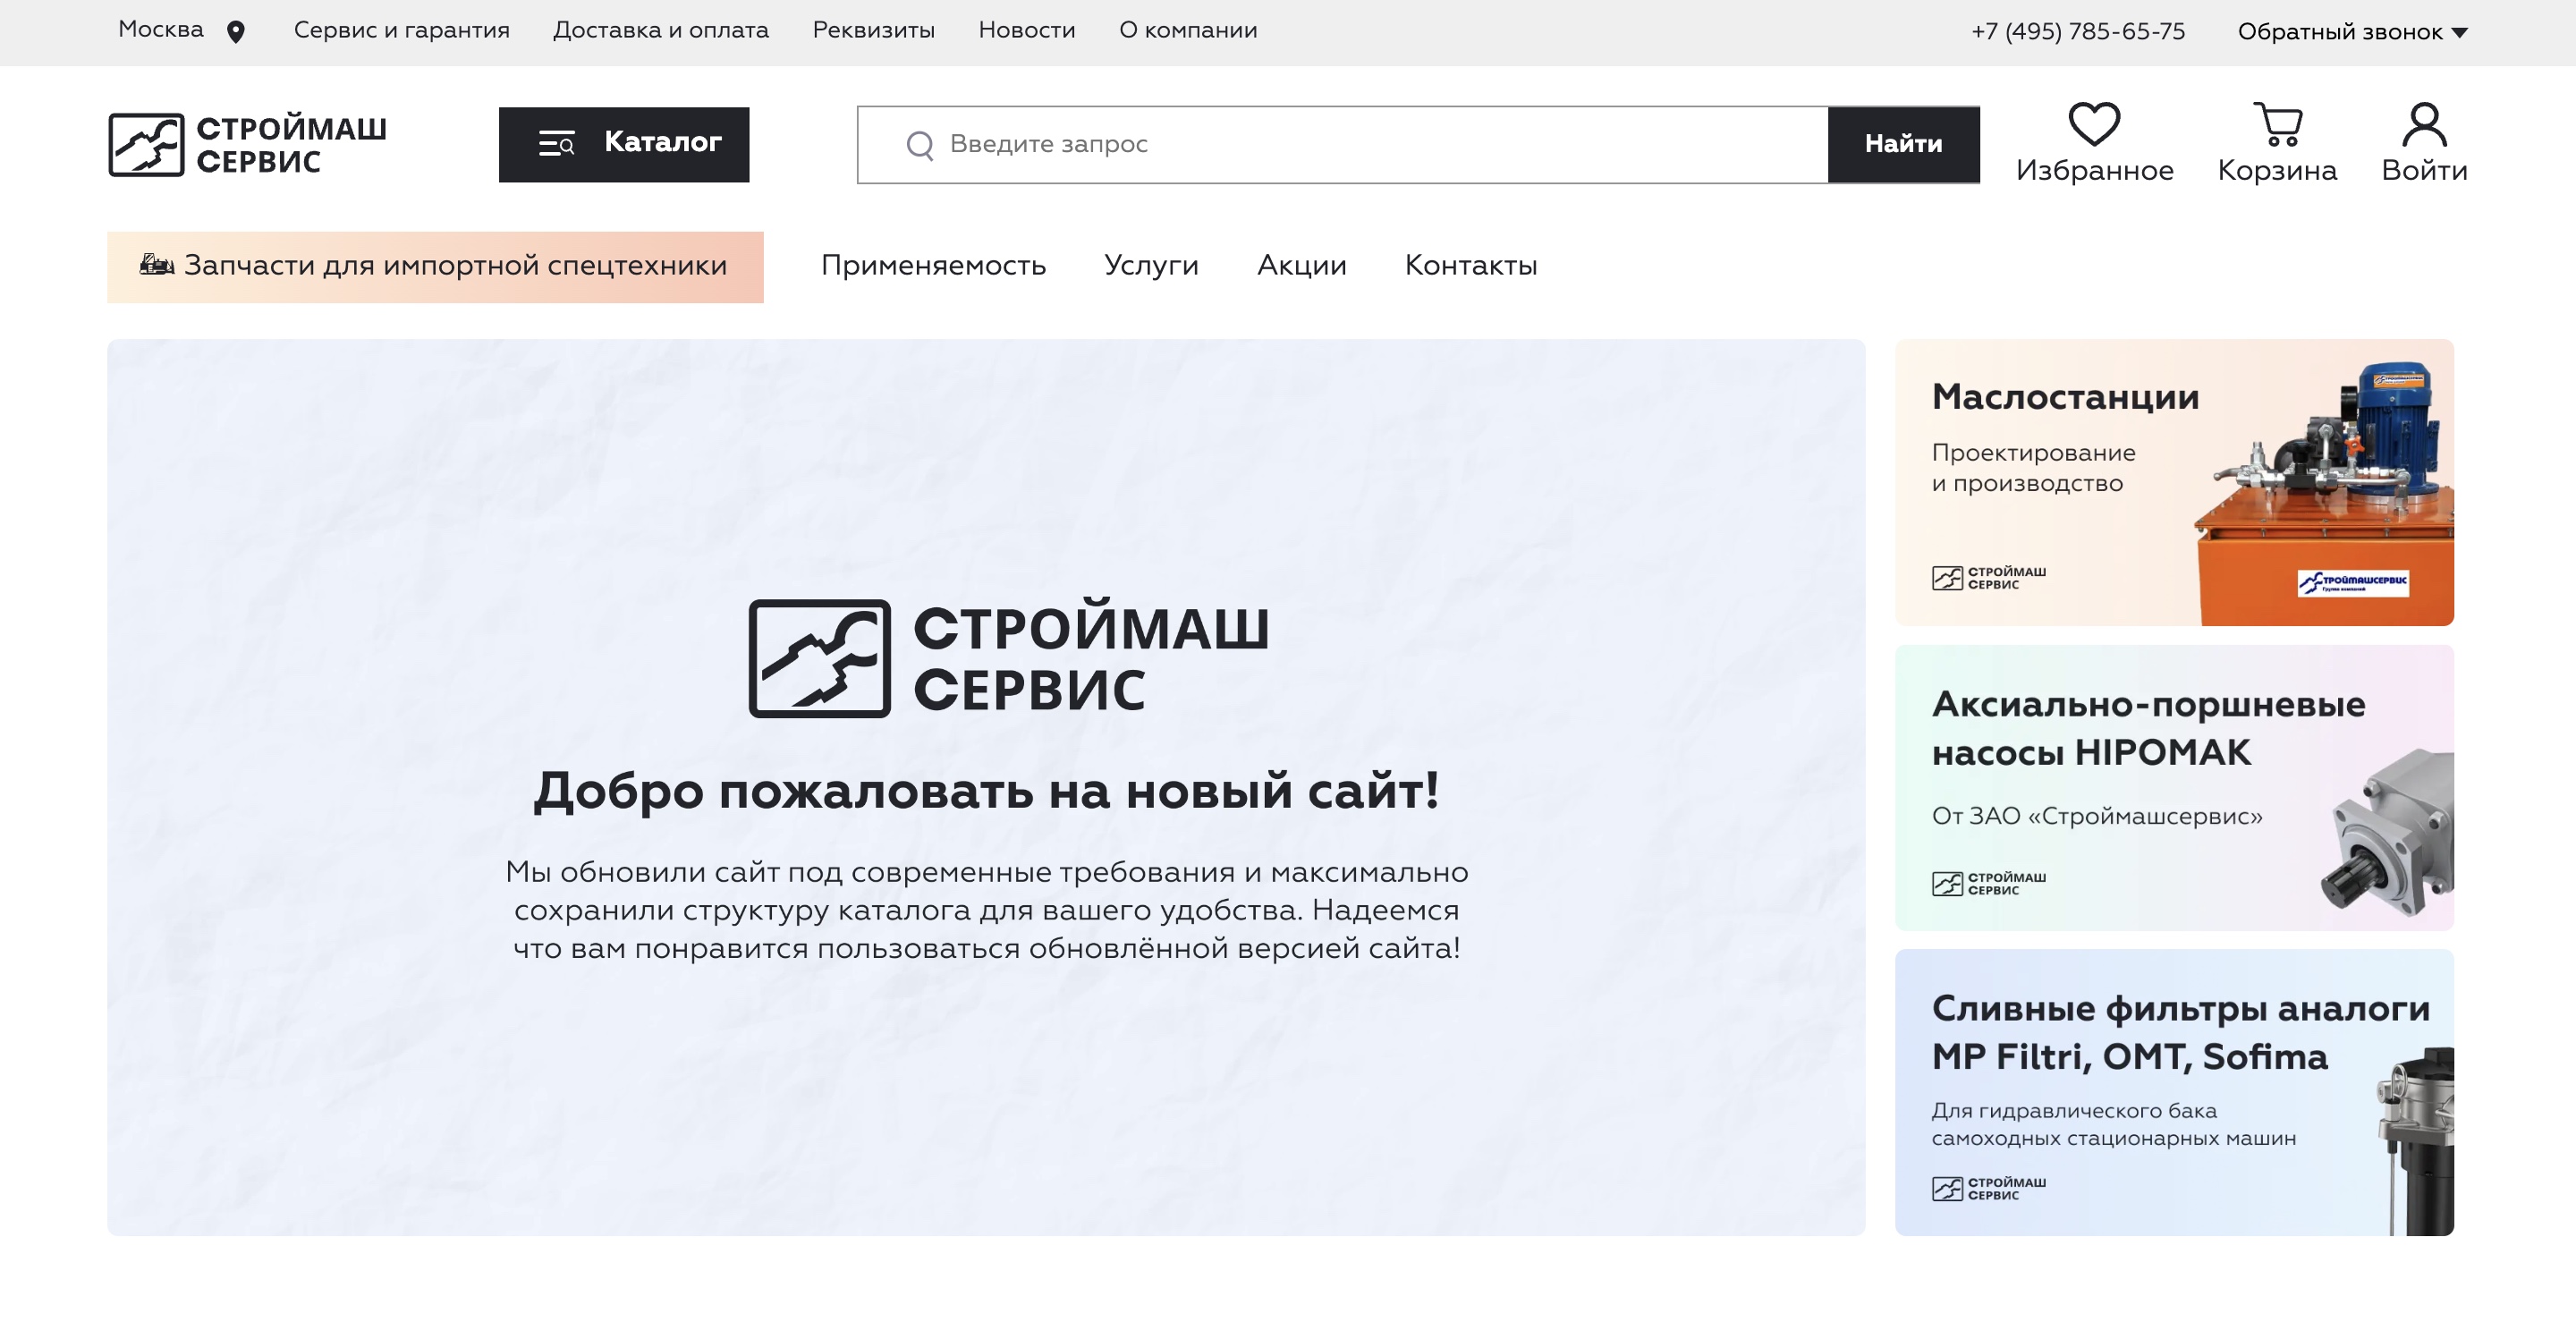 Интернет-магазин (50 000 товаров) zao-sms.ru